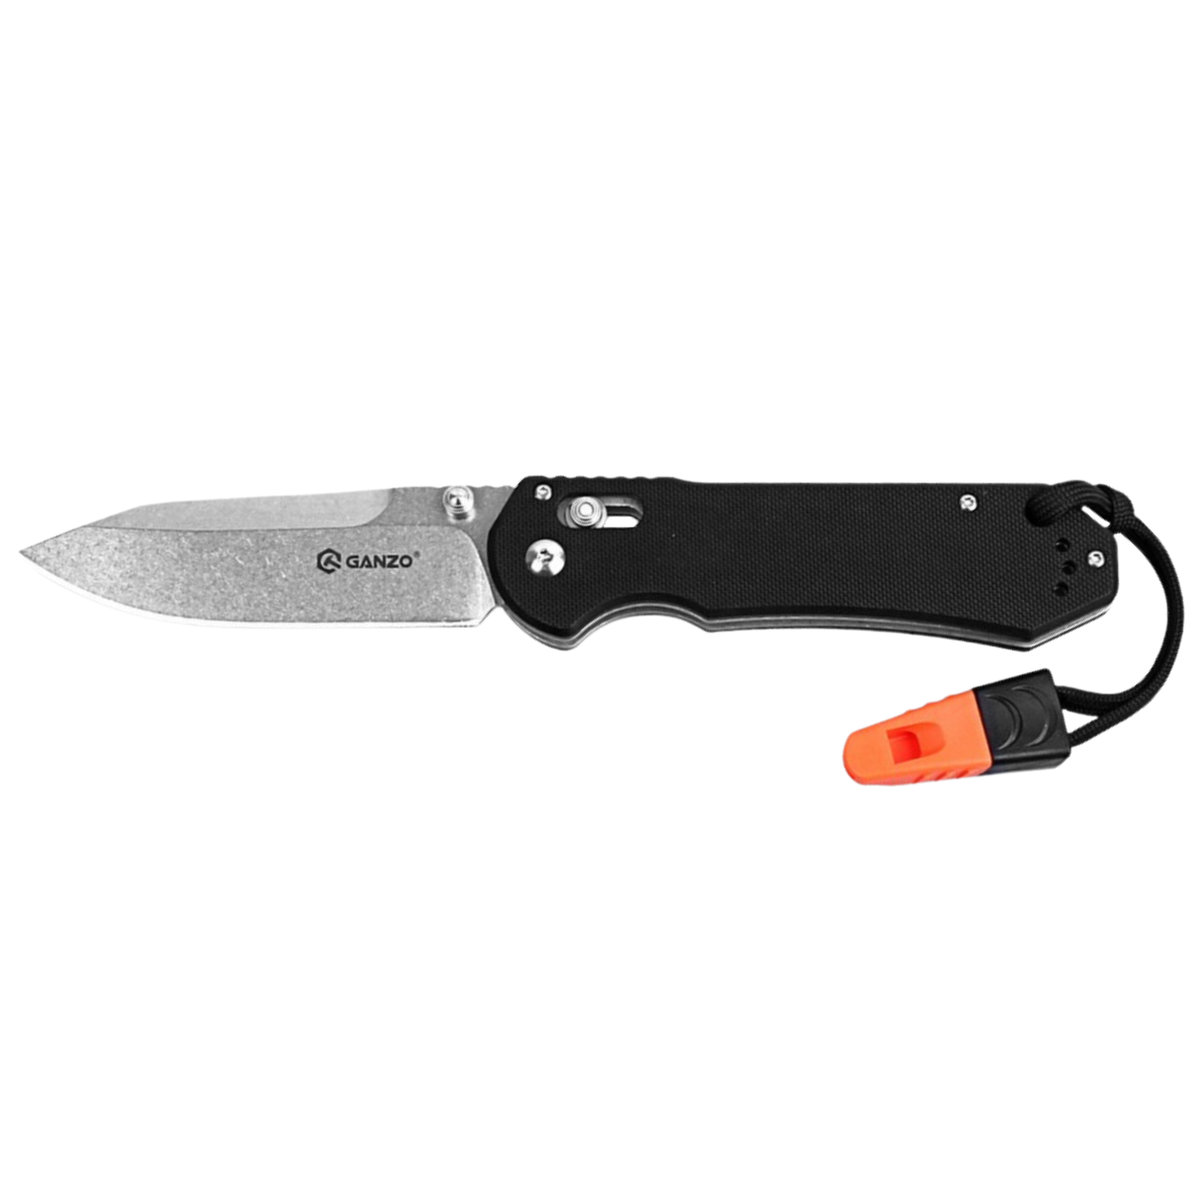 Ganzo GANZO nóż kieszonkowy nóż, czarny, jeden rozmiar G7452-BK-WS